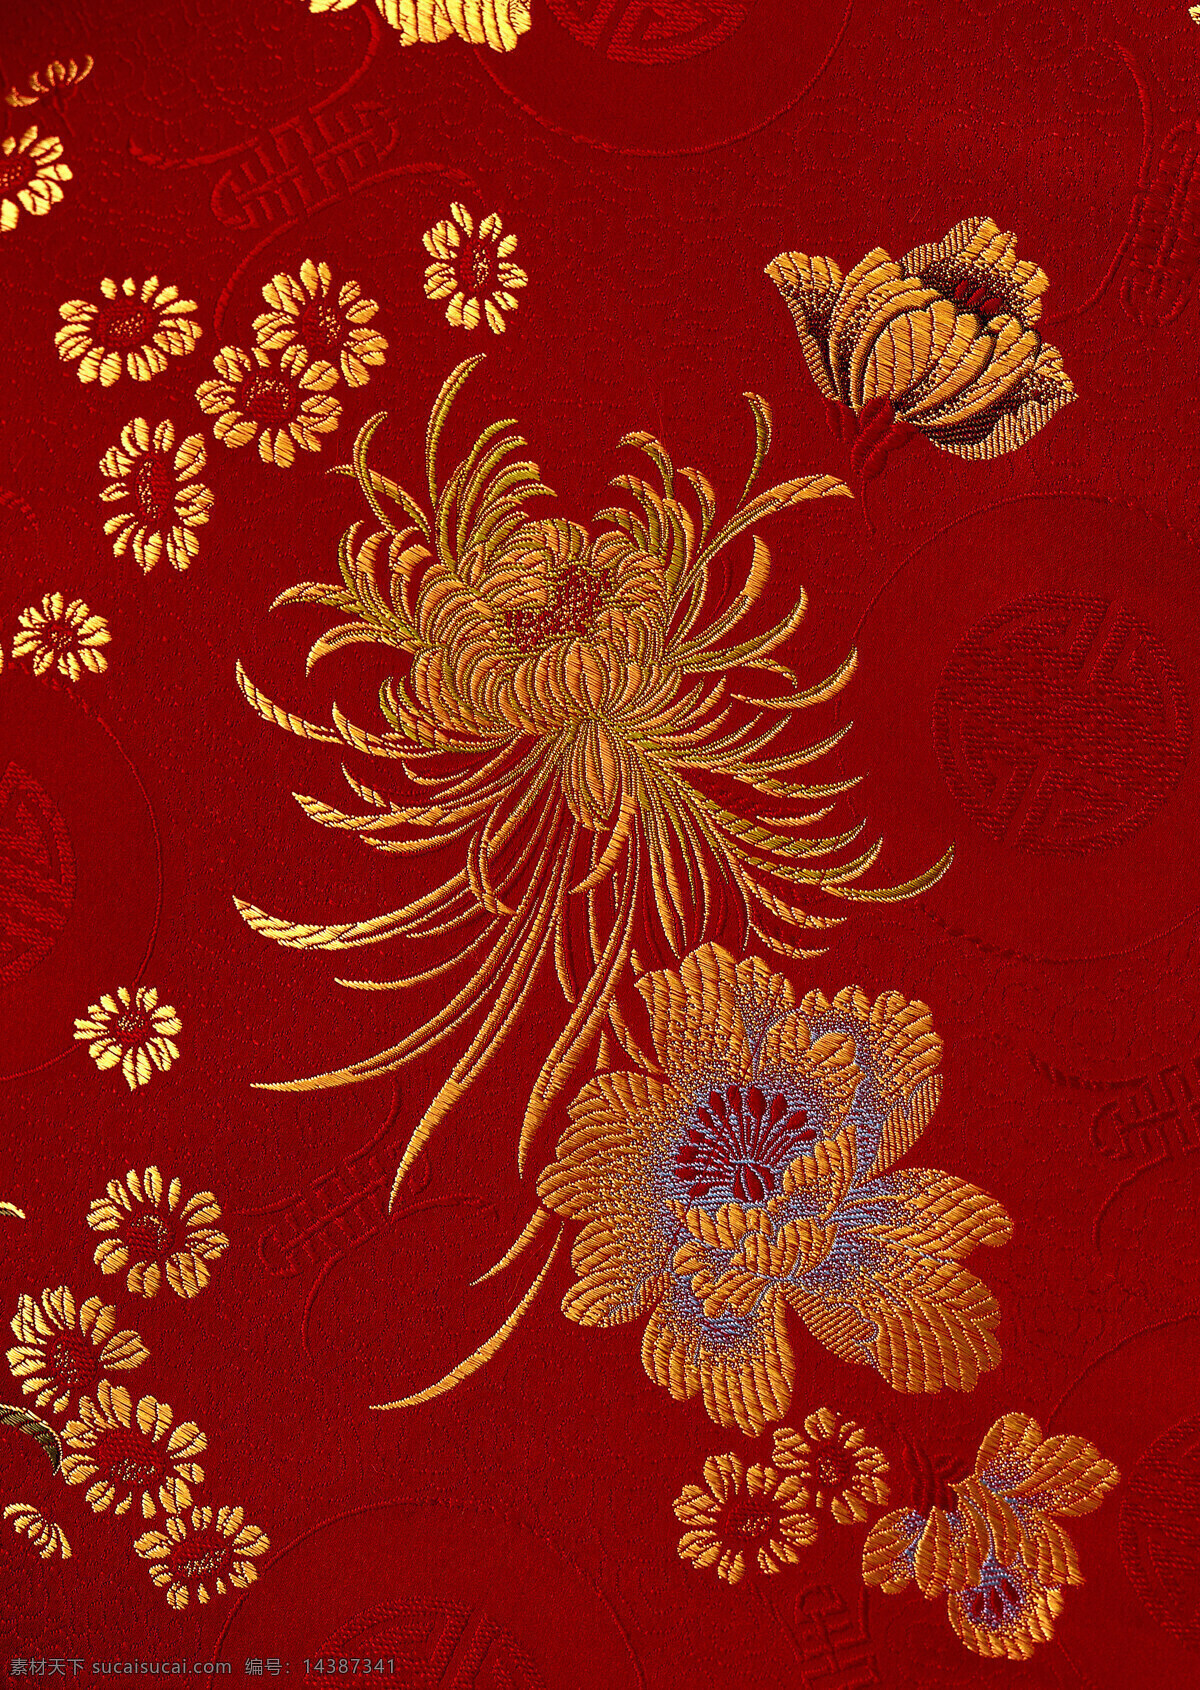 旗袍 布料 丝绸 针织 刺绣 古典 典雅 中国风 文化 高清 人文素材 文化艺术 传统文化